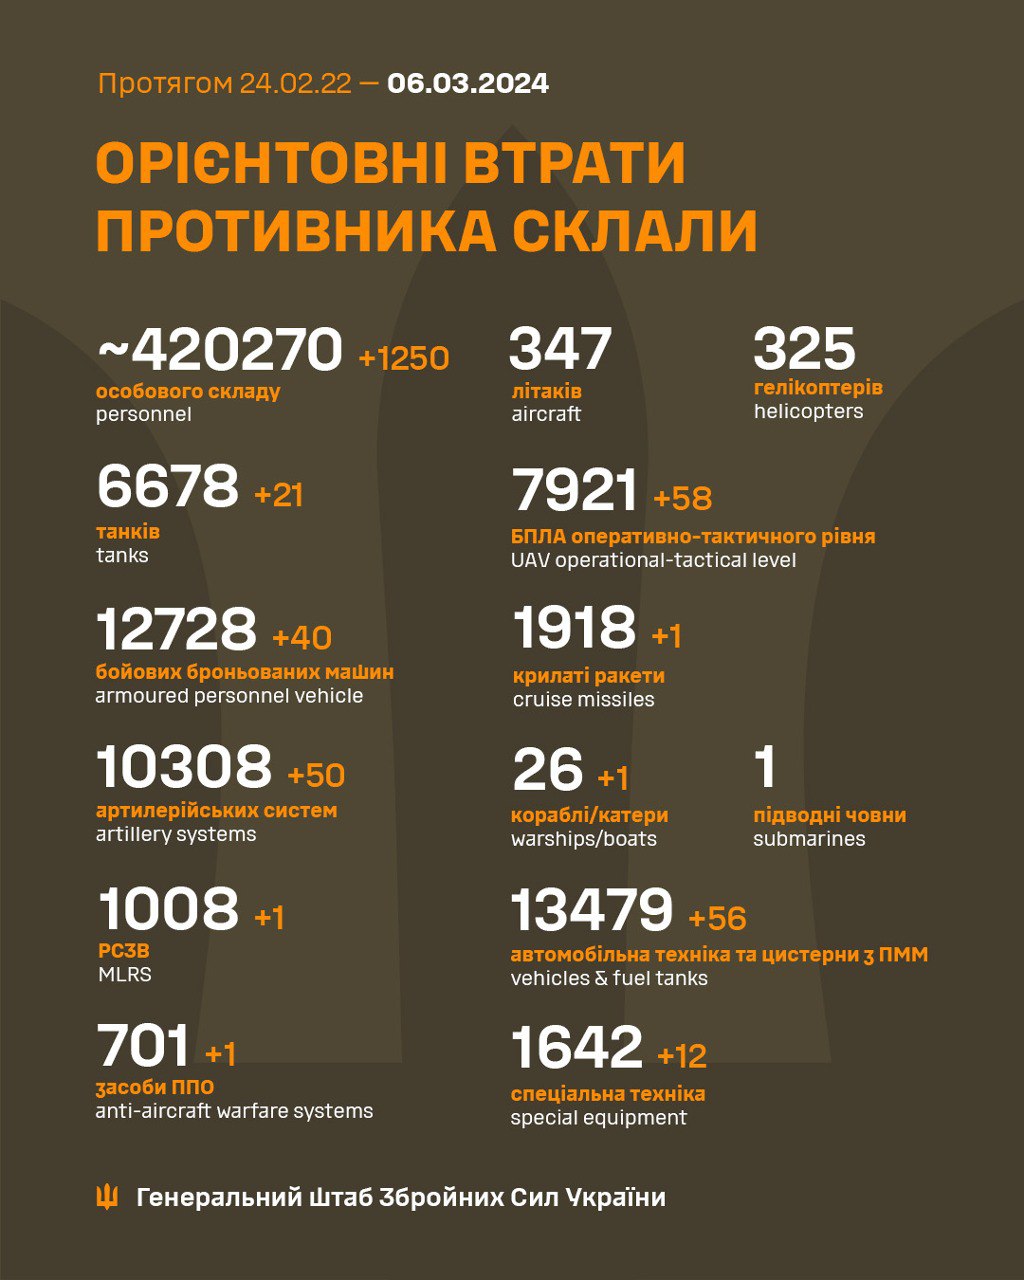 Ще корабель, 21 танк і понад 1200 окупантів: Генштаб оновив втрати Росії в Україні